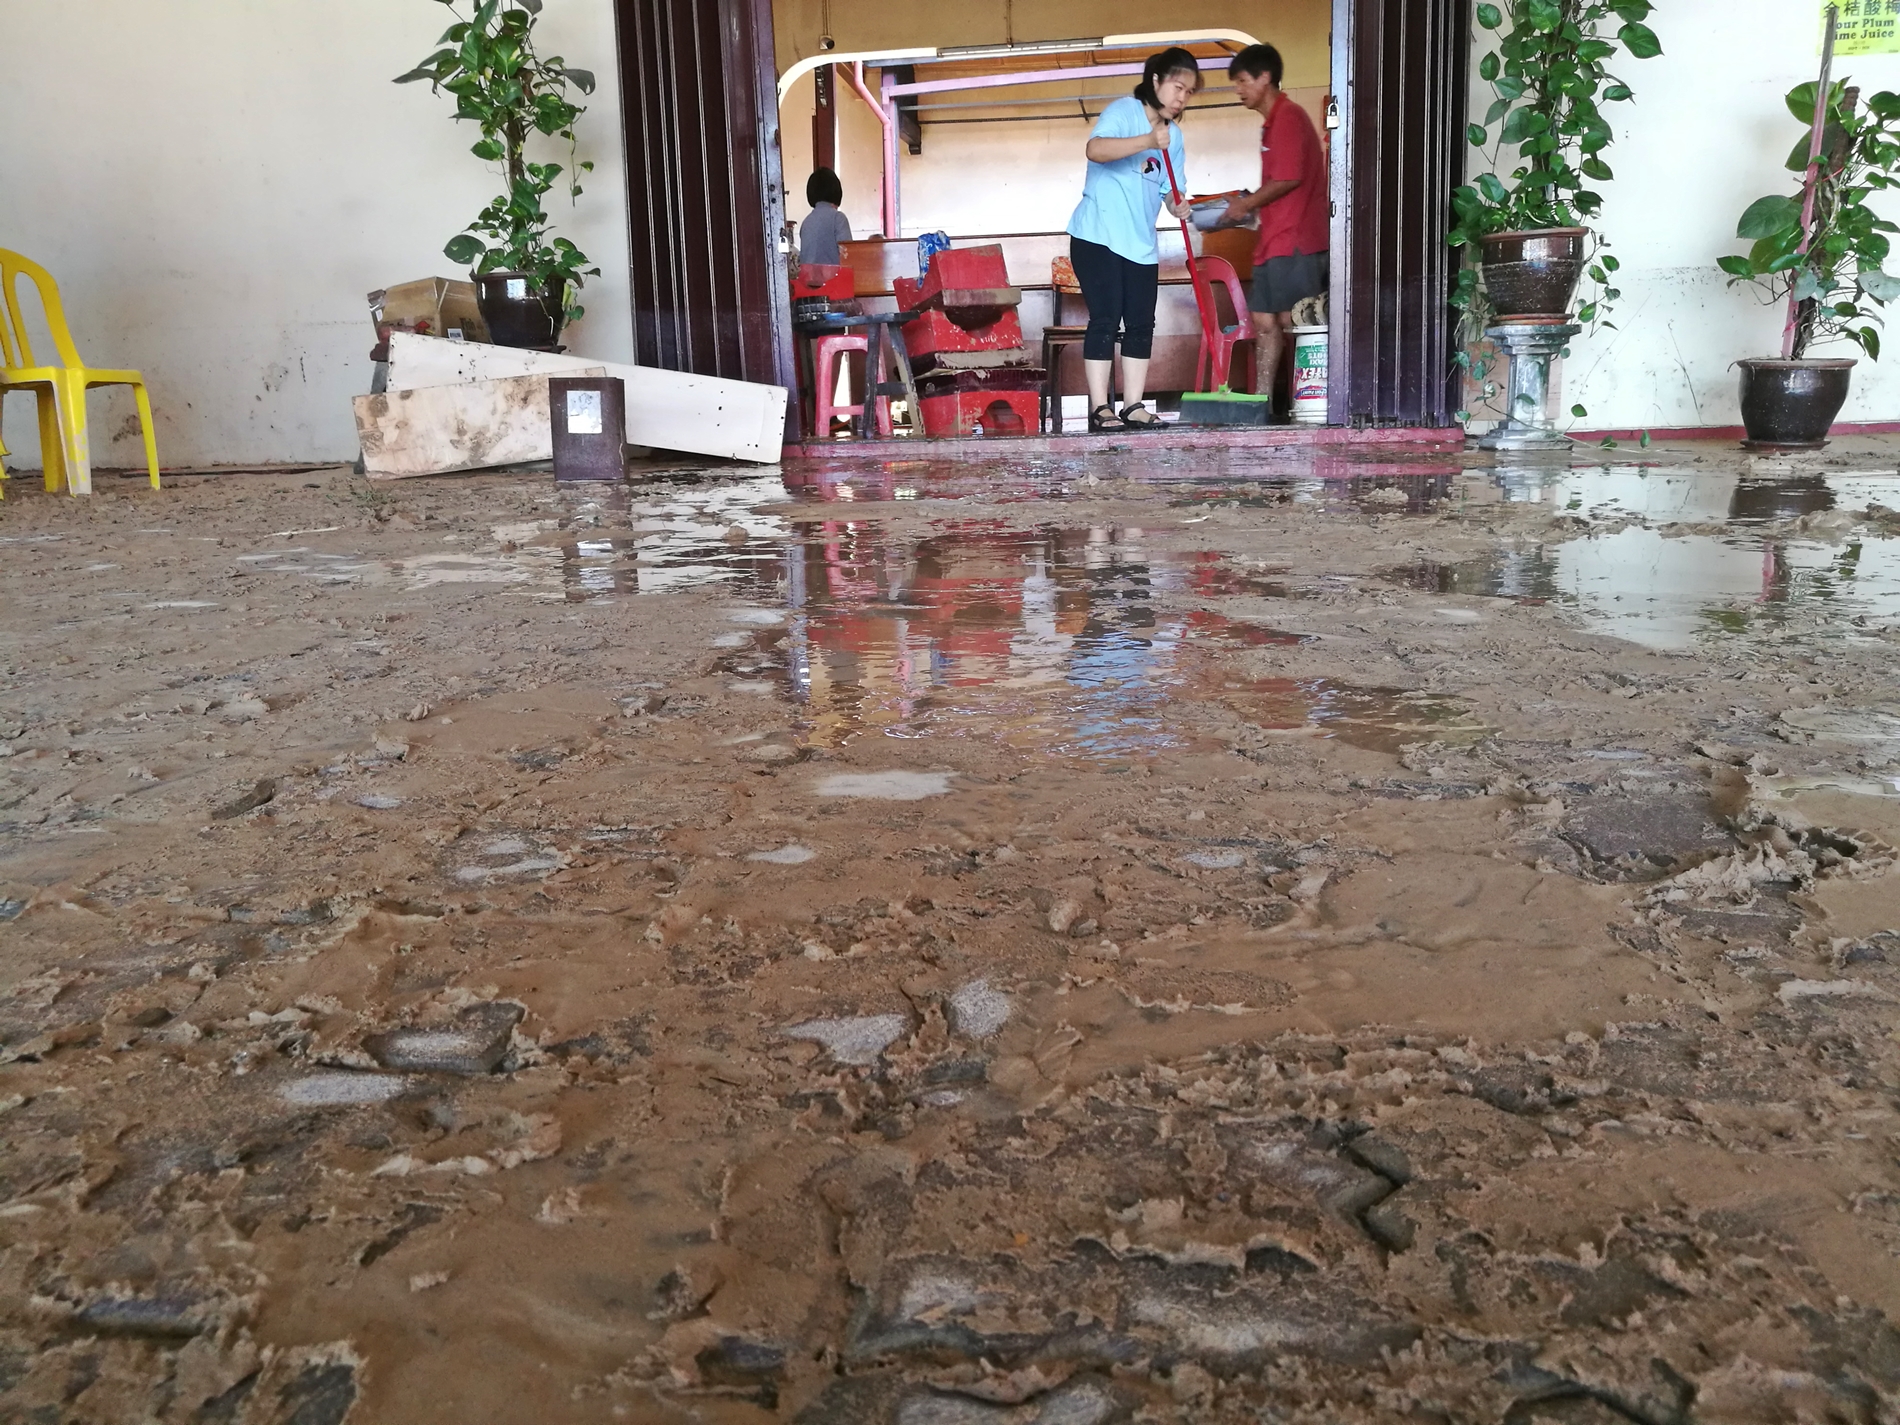 一场豪雨的黄泥巴，师爷宫的工作人员在忙碌的清洗堆满黄泥巴的地面。